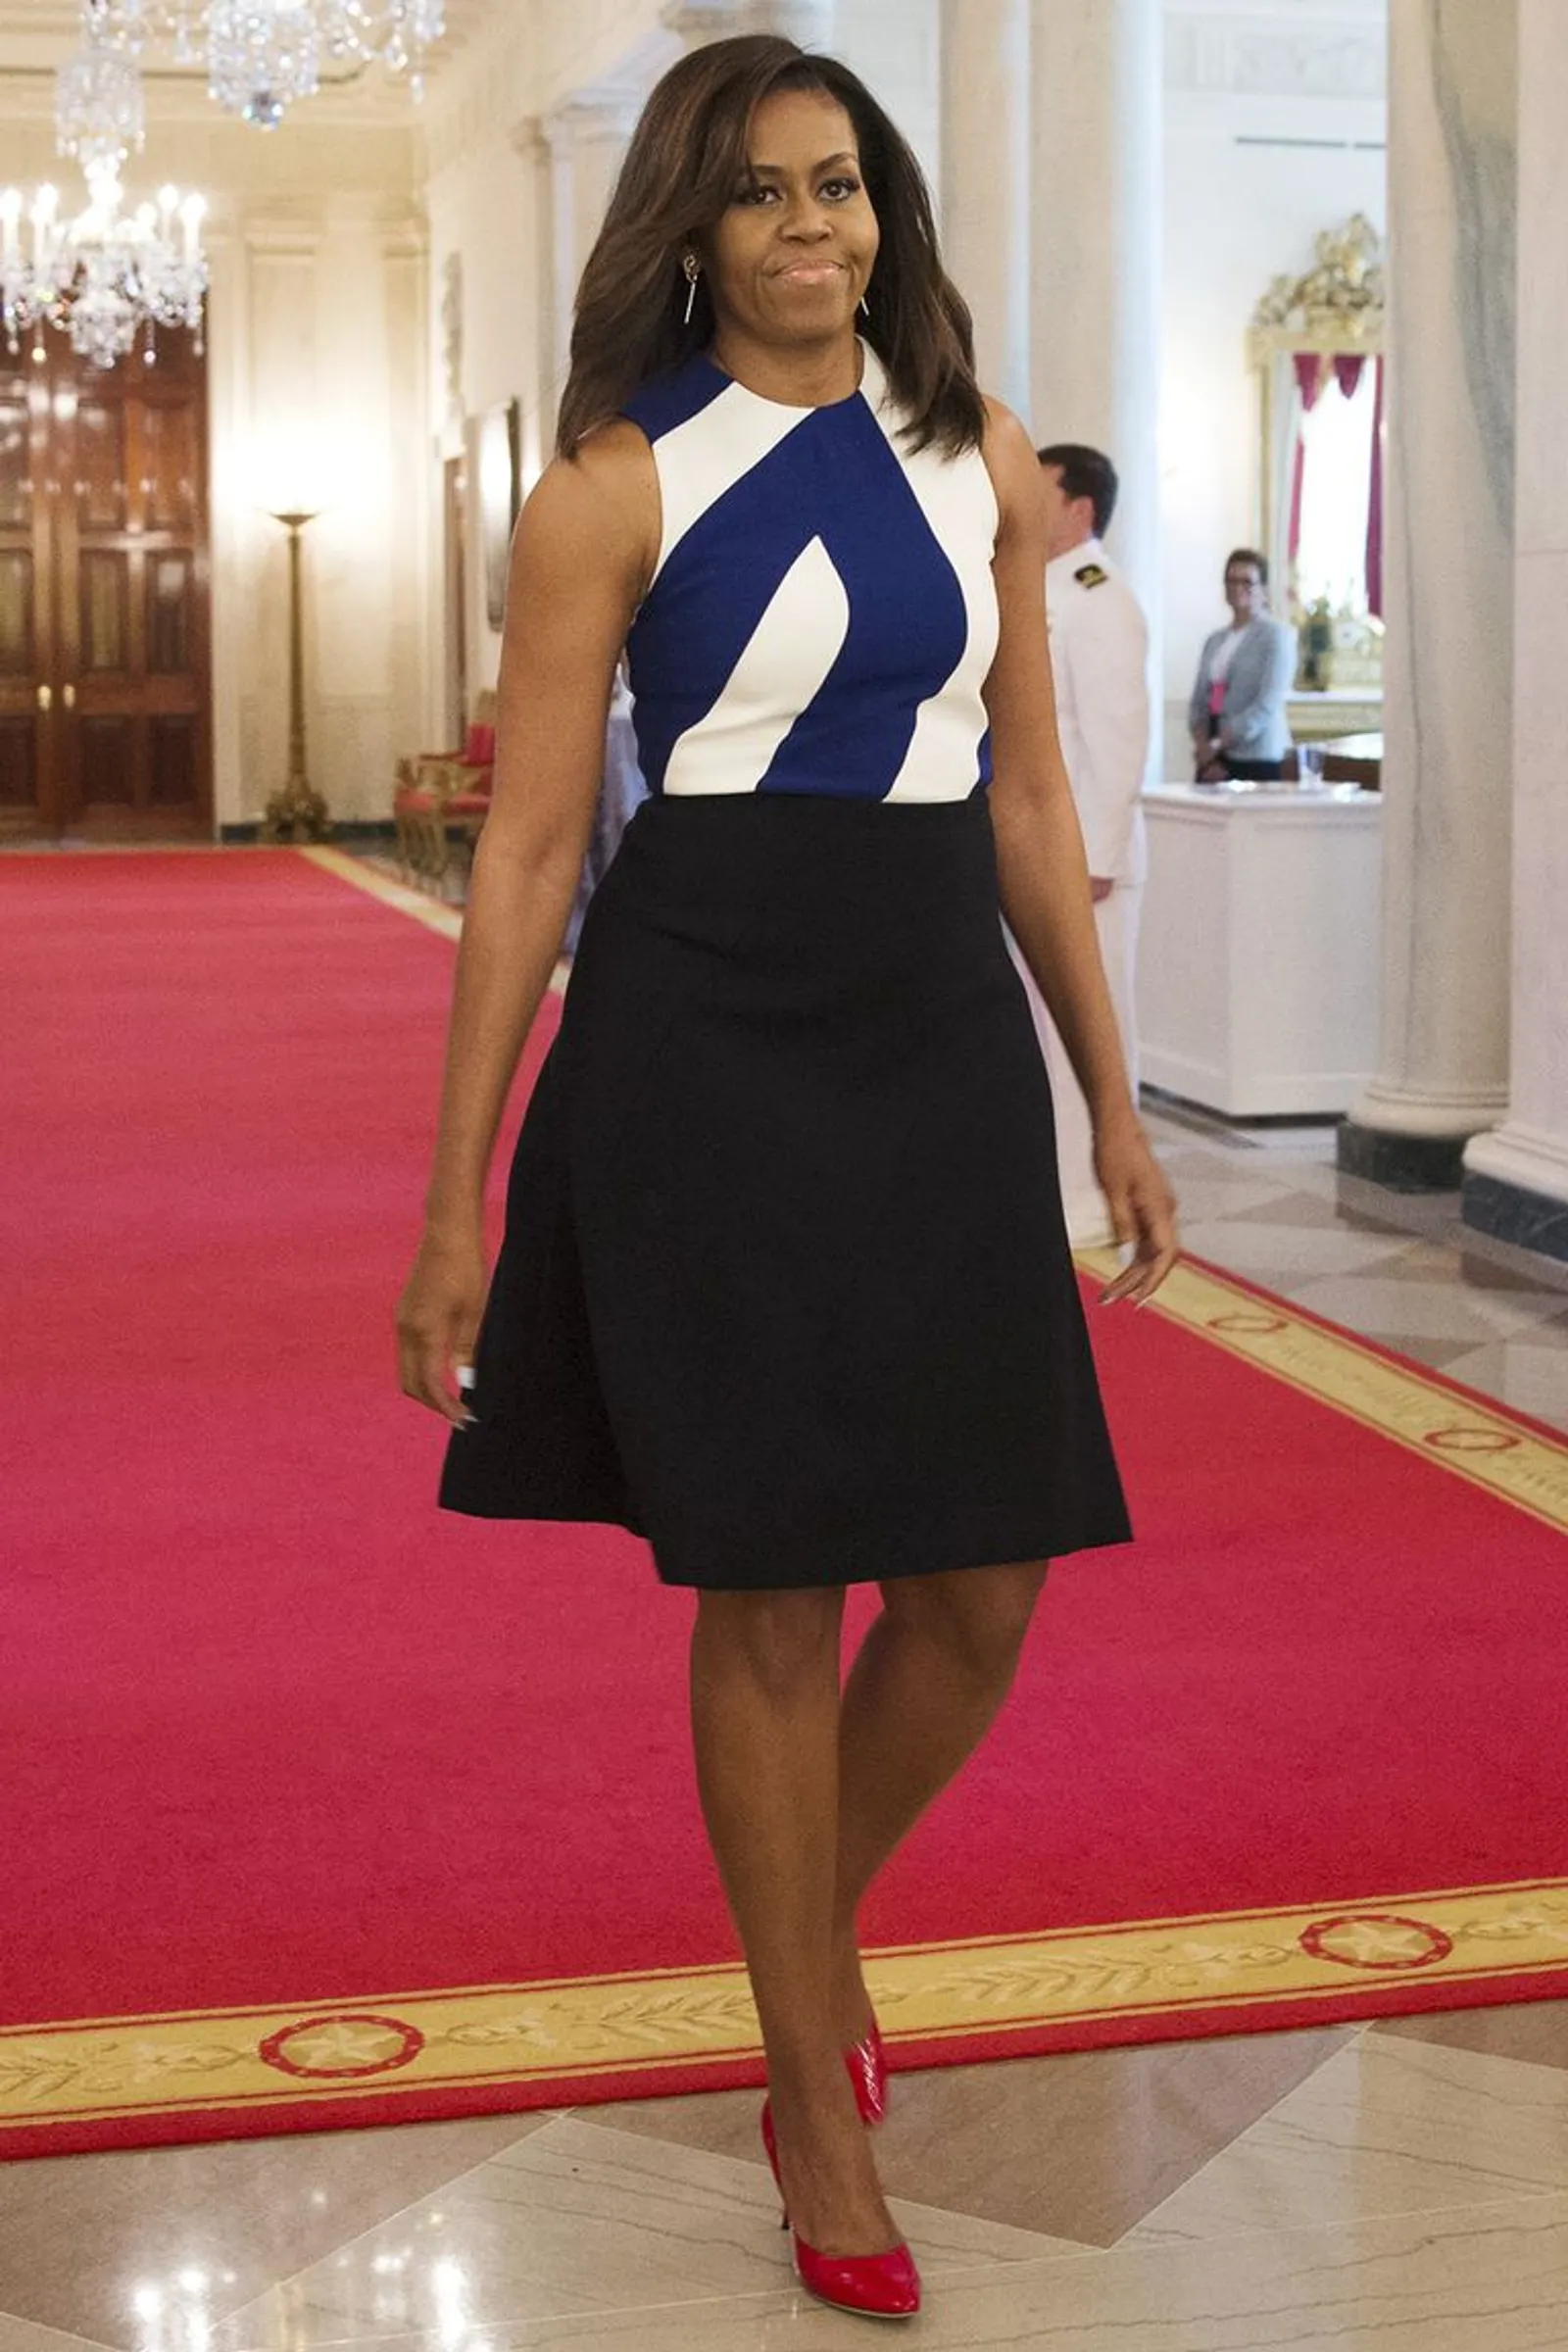 Tiru Gaya Outfit Michelle Obama untuk Tampil Elegan & Modis!